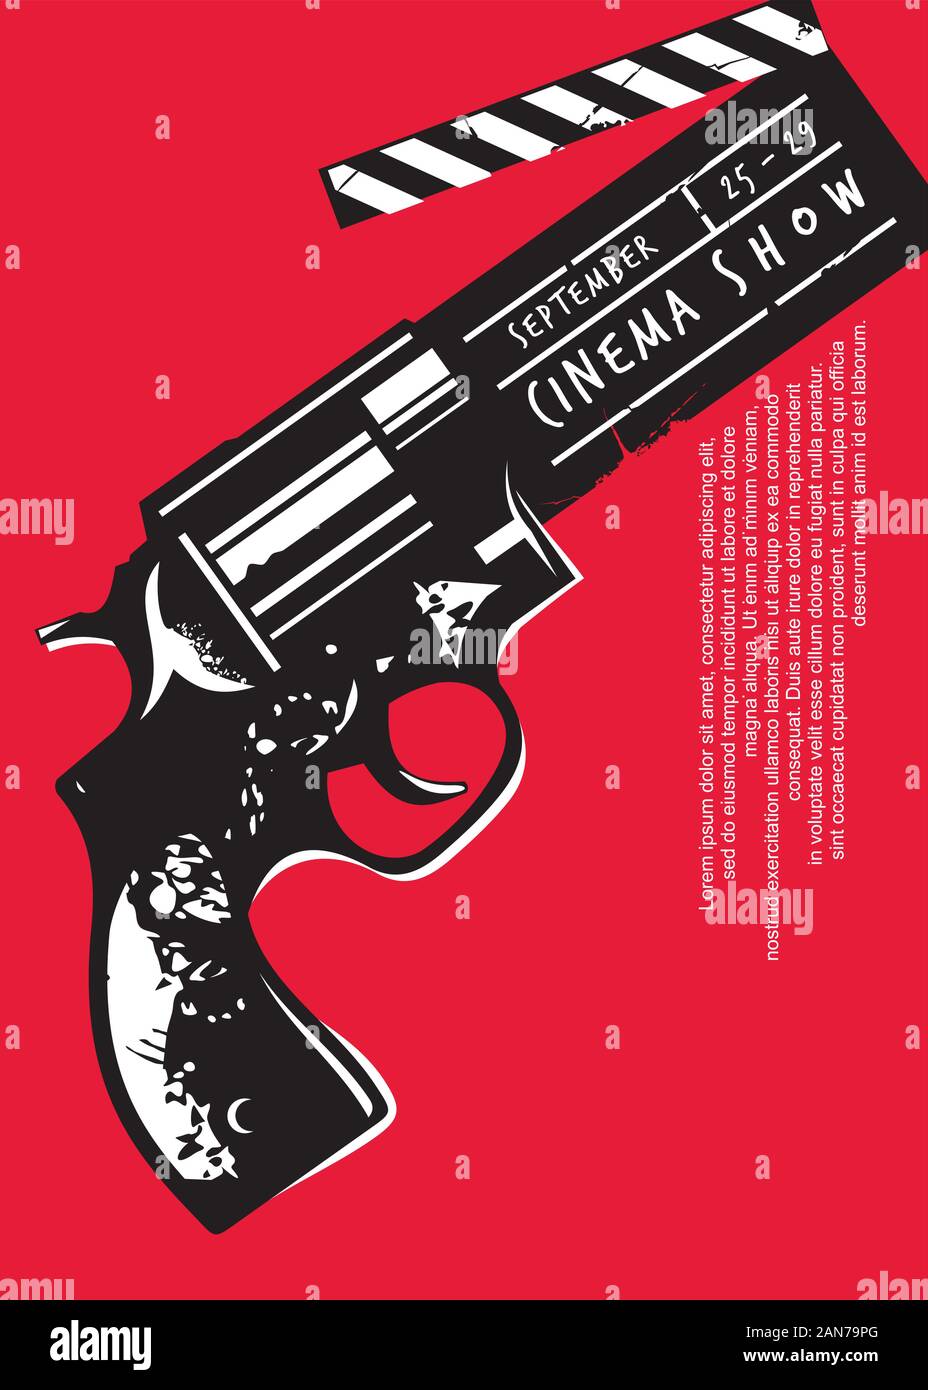 Kreative Film event Plakat mit gun Grafik und Klappe. Kino Flyer Design auf rotem Hintergrund. Filmindustrie Thema. Stock Vektor